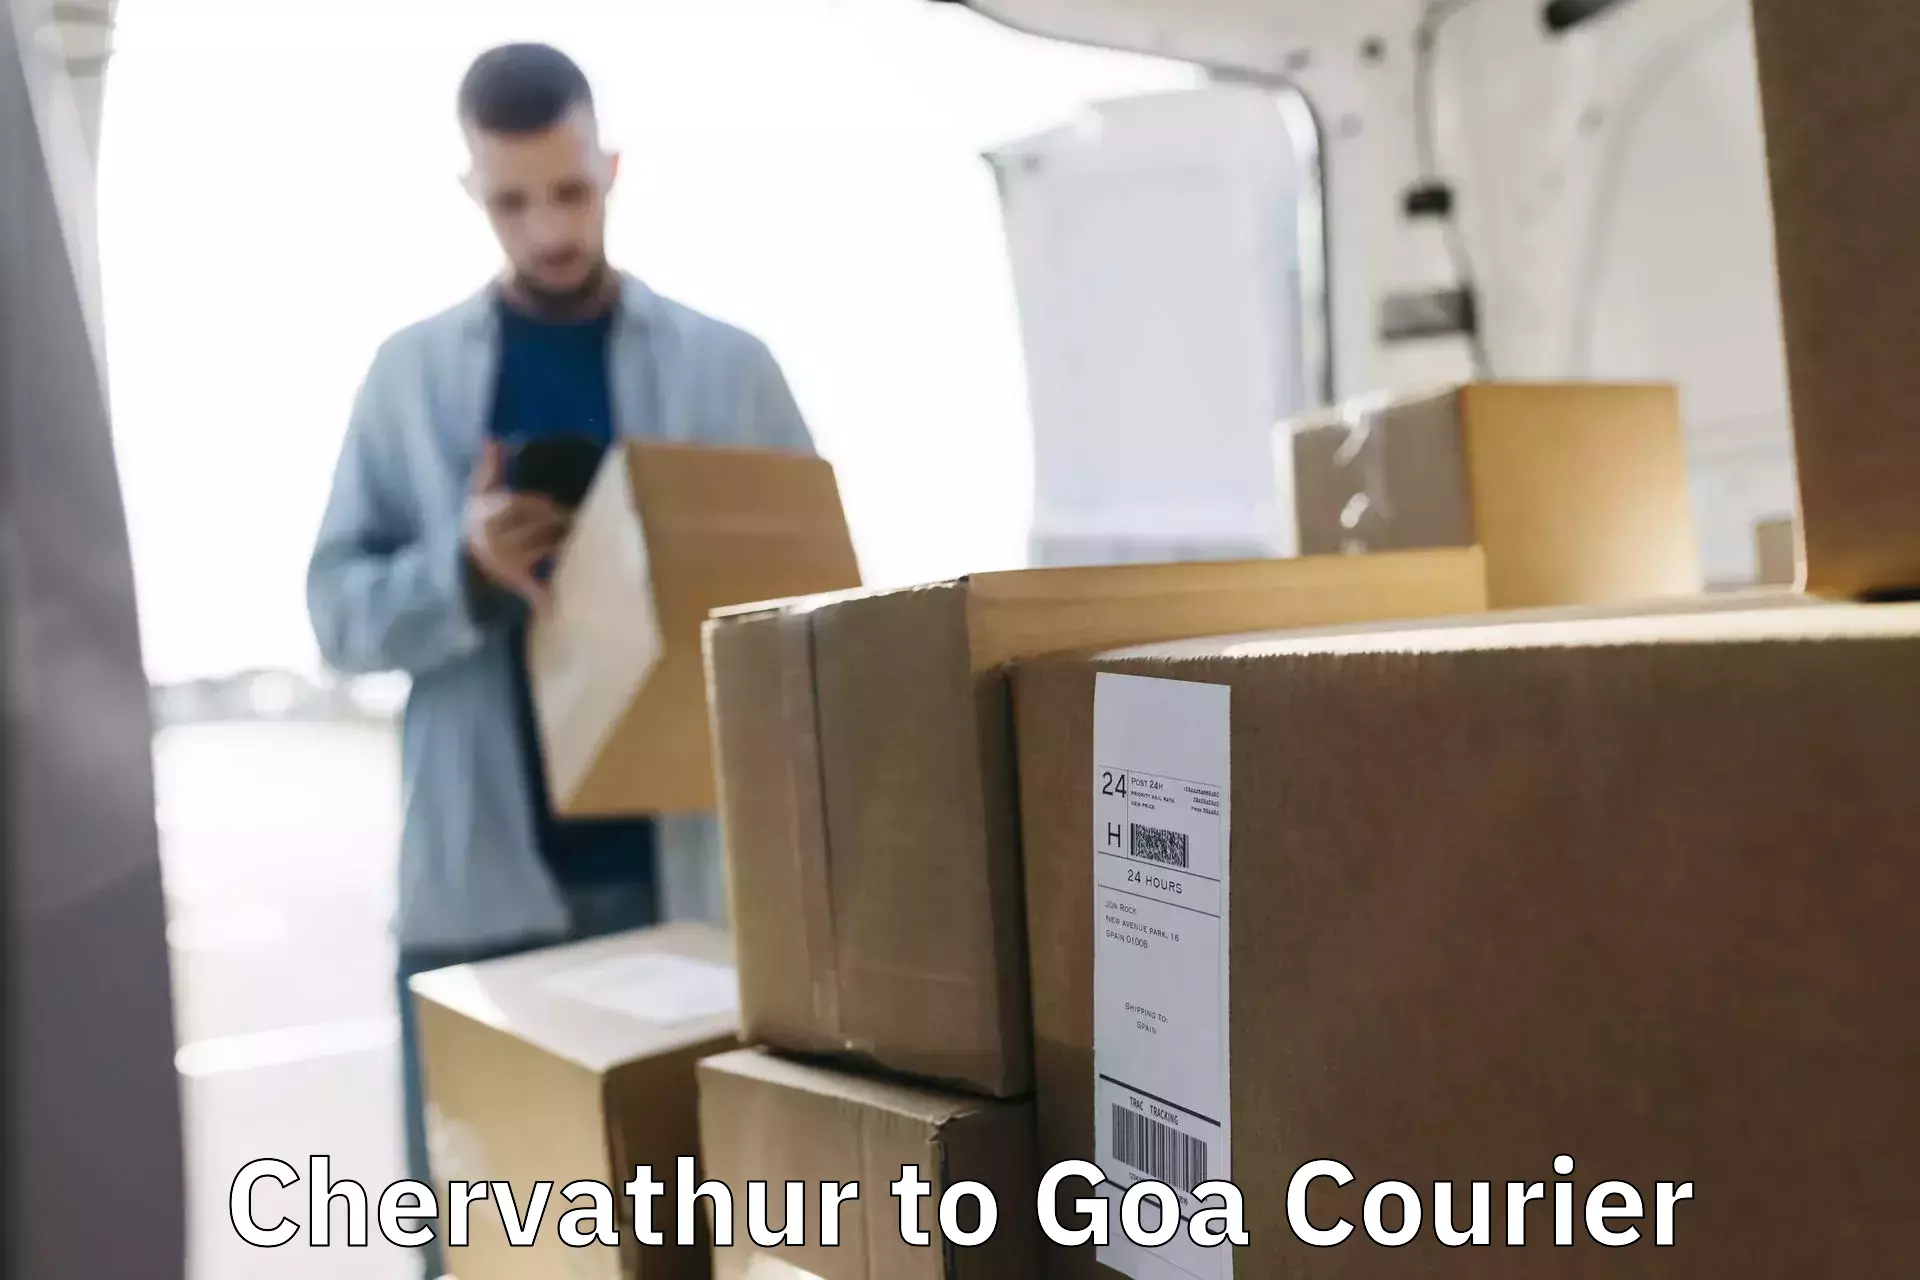 Door-to-door freight service Chervathur to IIT Goa